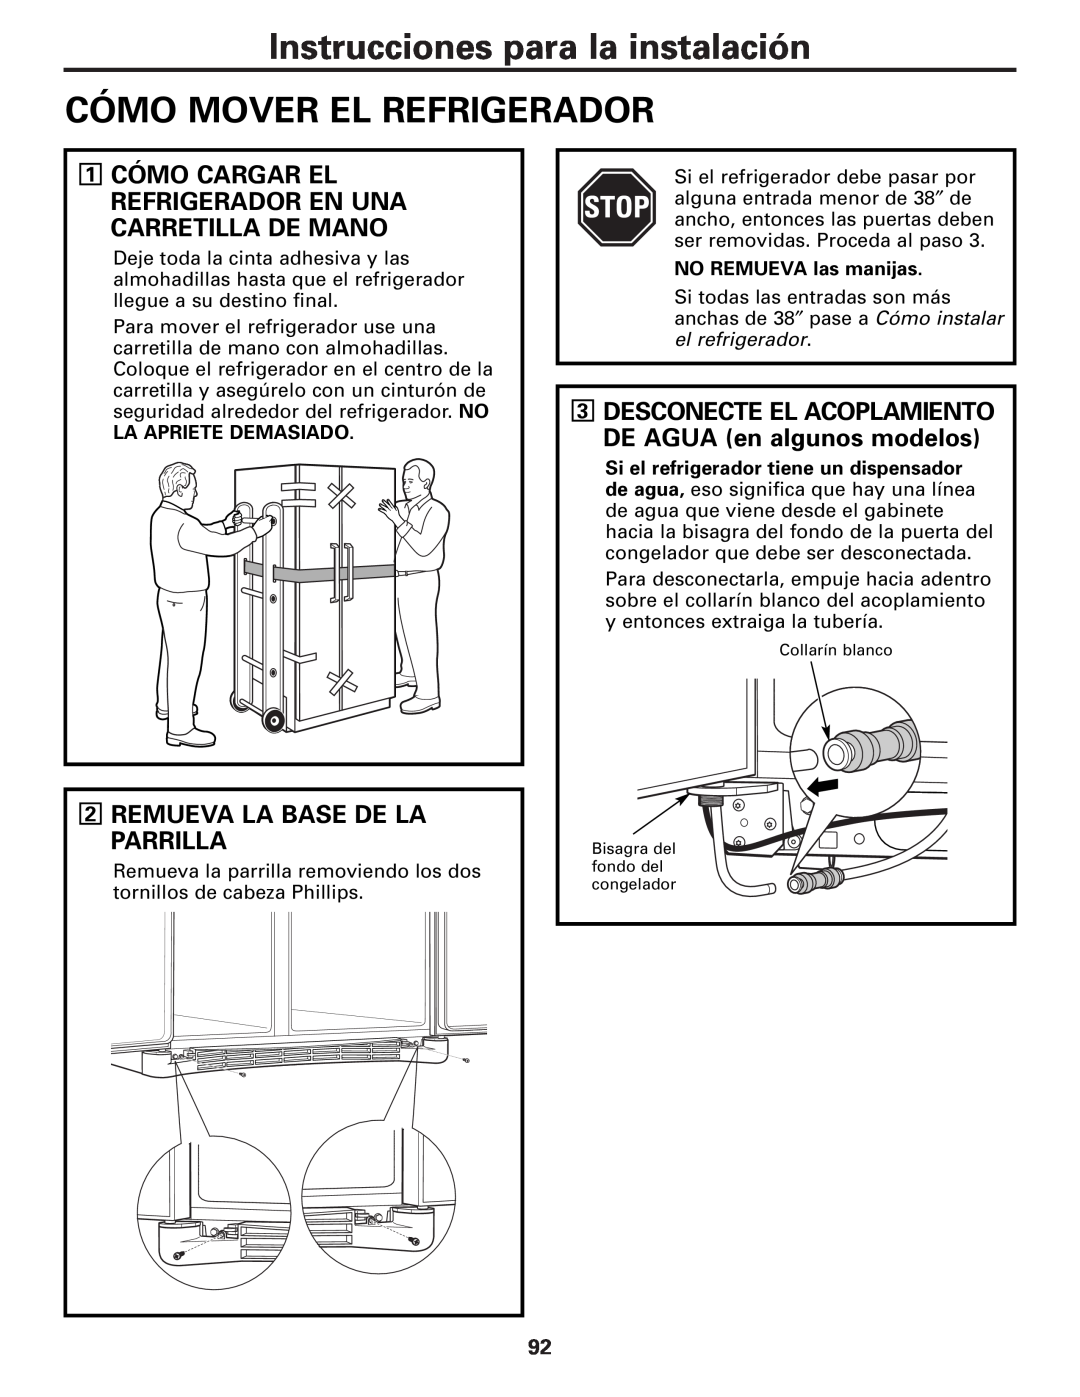 GE MODELS 23 AND 25 Instrucciones para la instalación CÓMO MOVER EL REFRIGERADOR, Remueva La Base De La Parrilla 